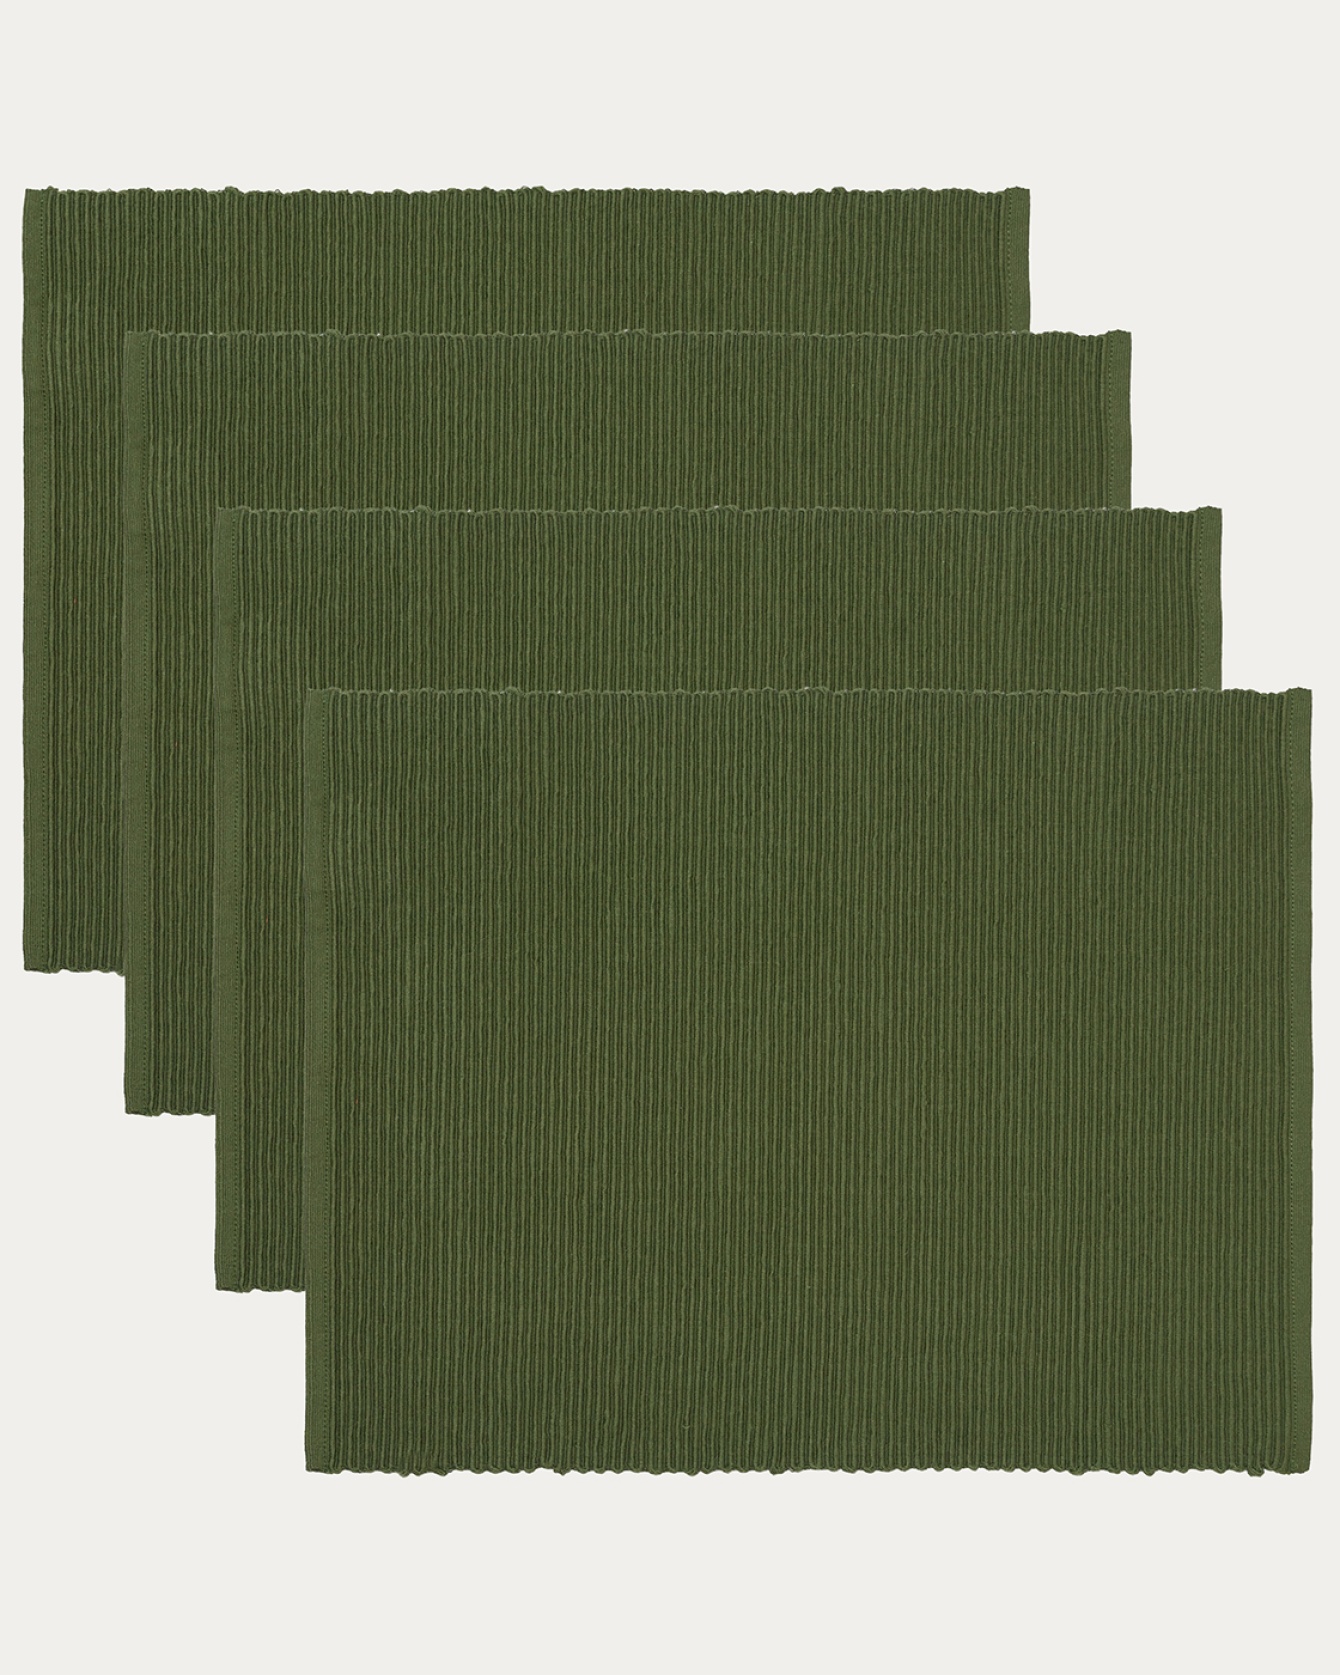 Produktbild dunkles olivgrün UNI Tischset aus weicher Baumwolle in Rippenqualität von LINUM DESIGN. Größe 35x46 cm und in 4er-Pack verkauft.